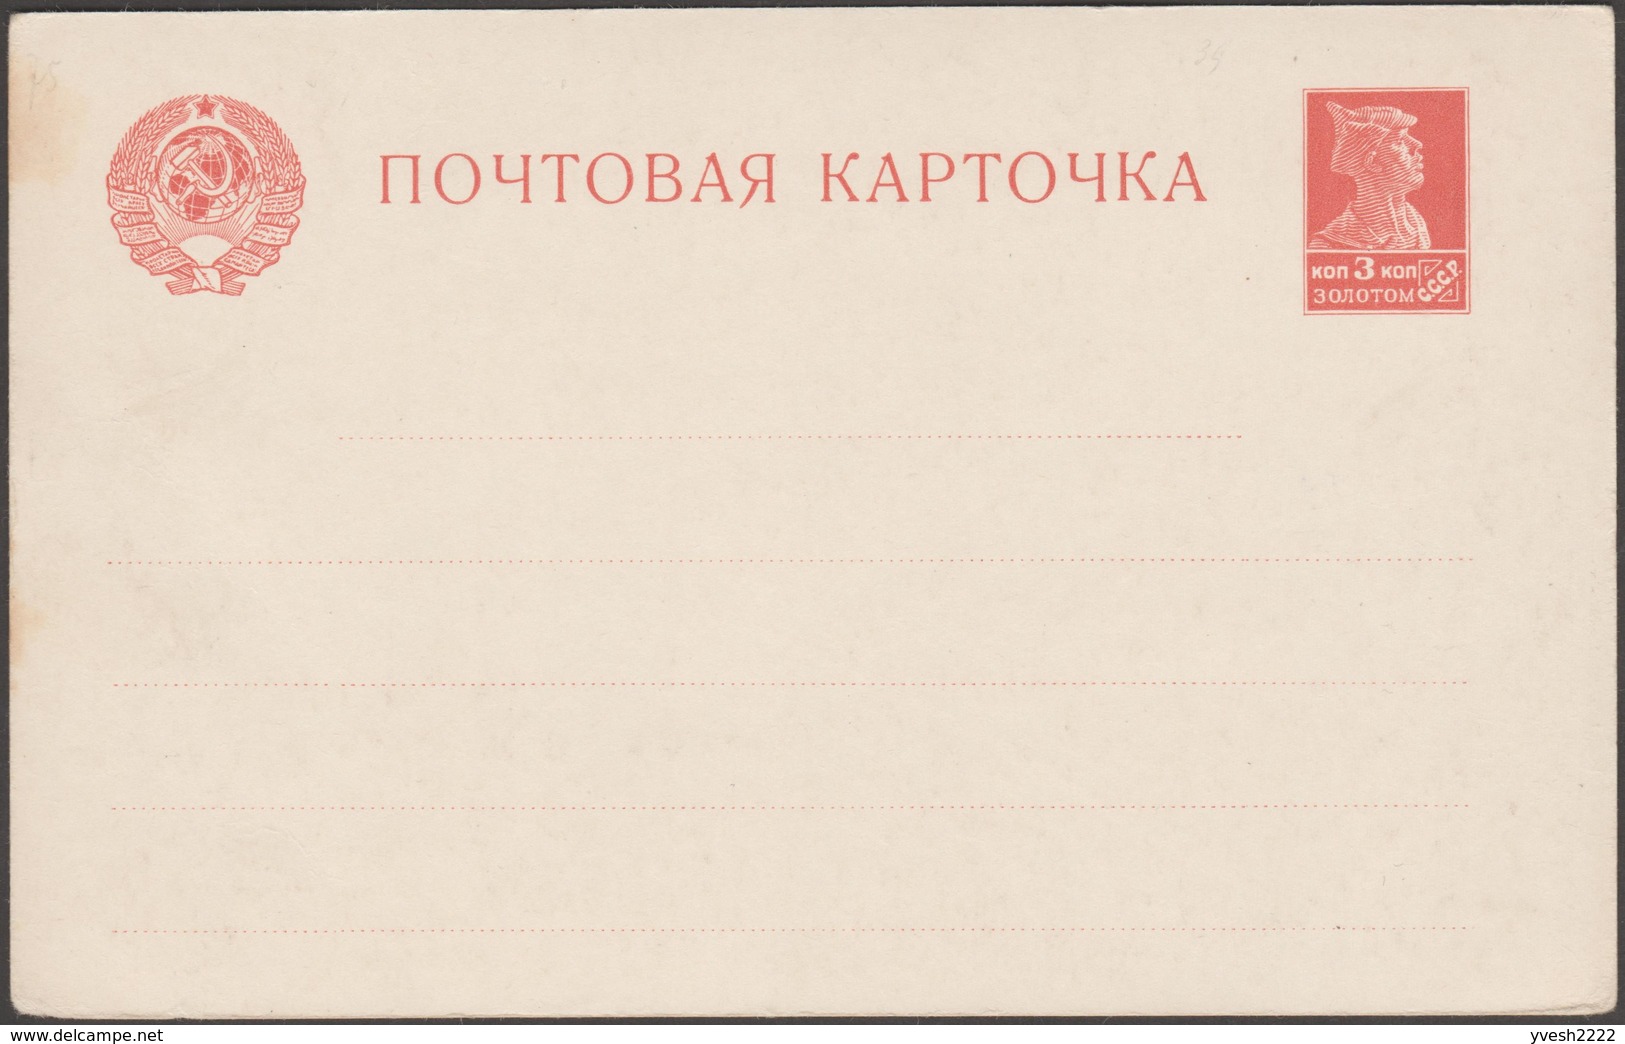 URSS 1924. 2 Cartes Postales, Entiers. Timbre 3 à Kop. Soldat. Décès De Vladimir Ilitch Oulianov, Dit Lénine. 2 Couleurs - Lenin